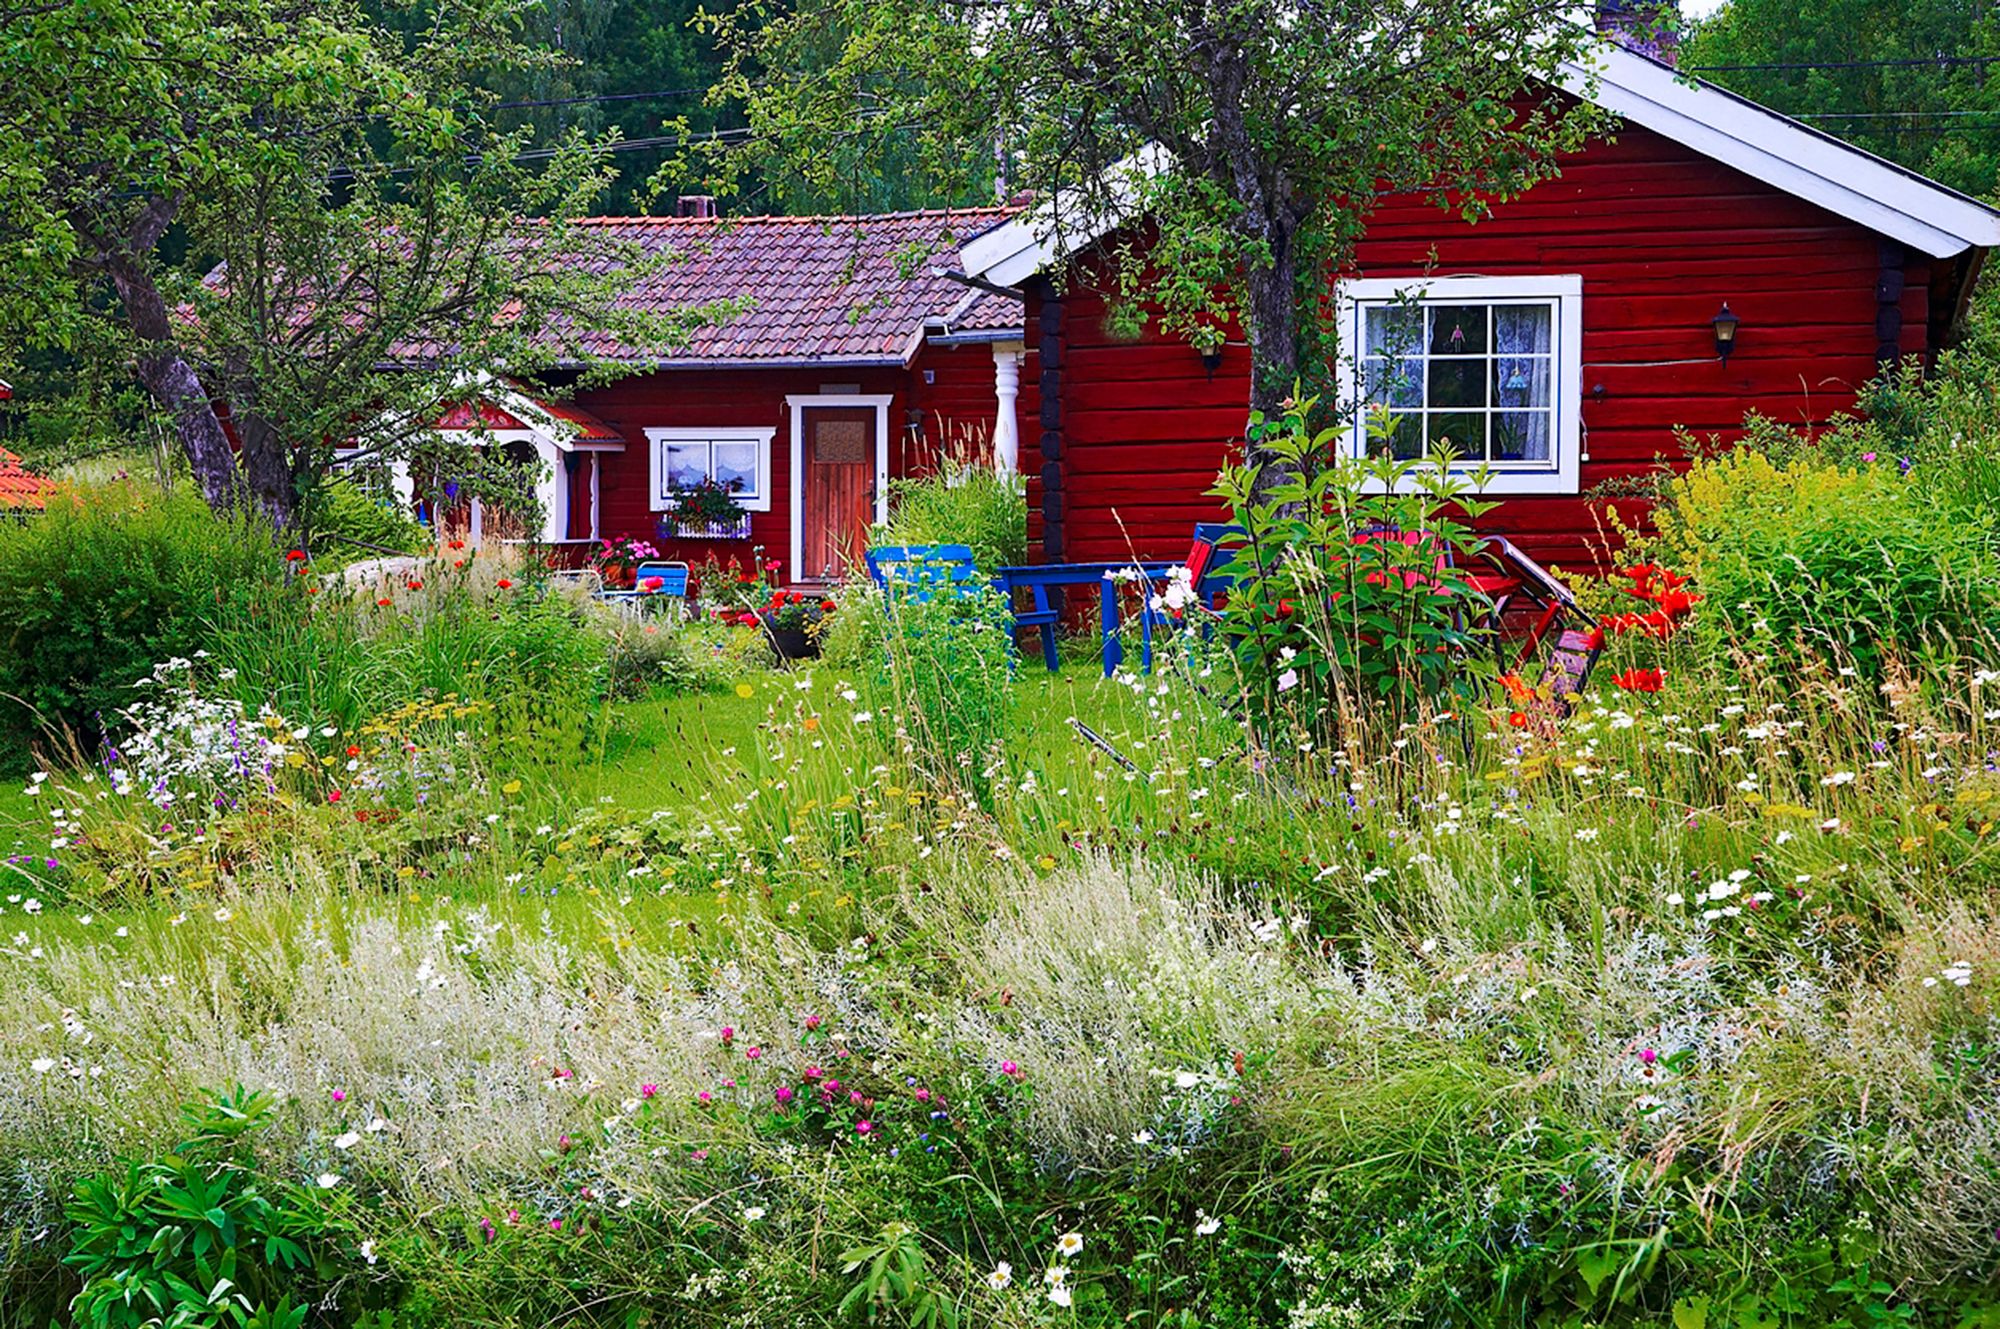 Avoimet puutarhat: Puutarhassa villeyskin on sallittua. © iStock